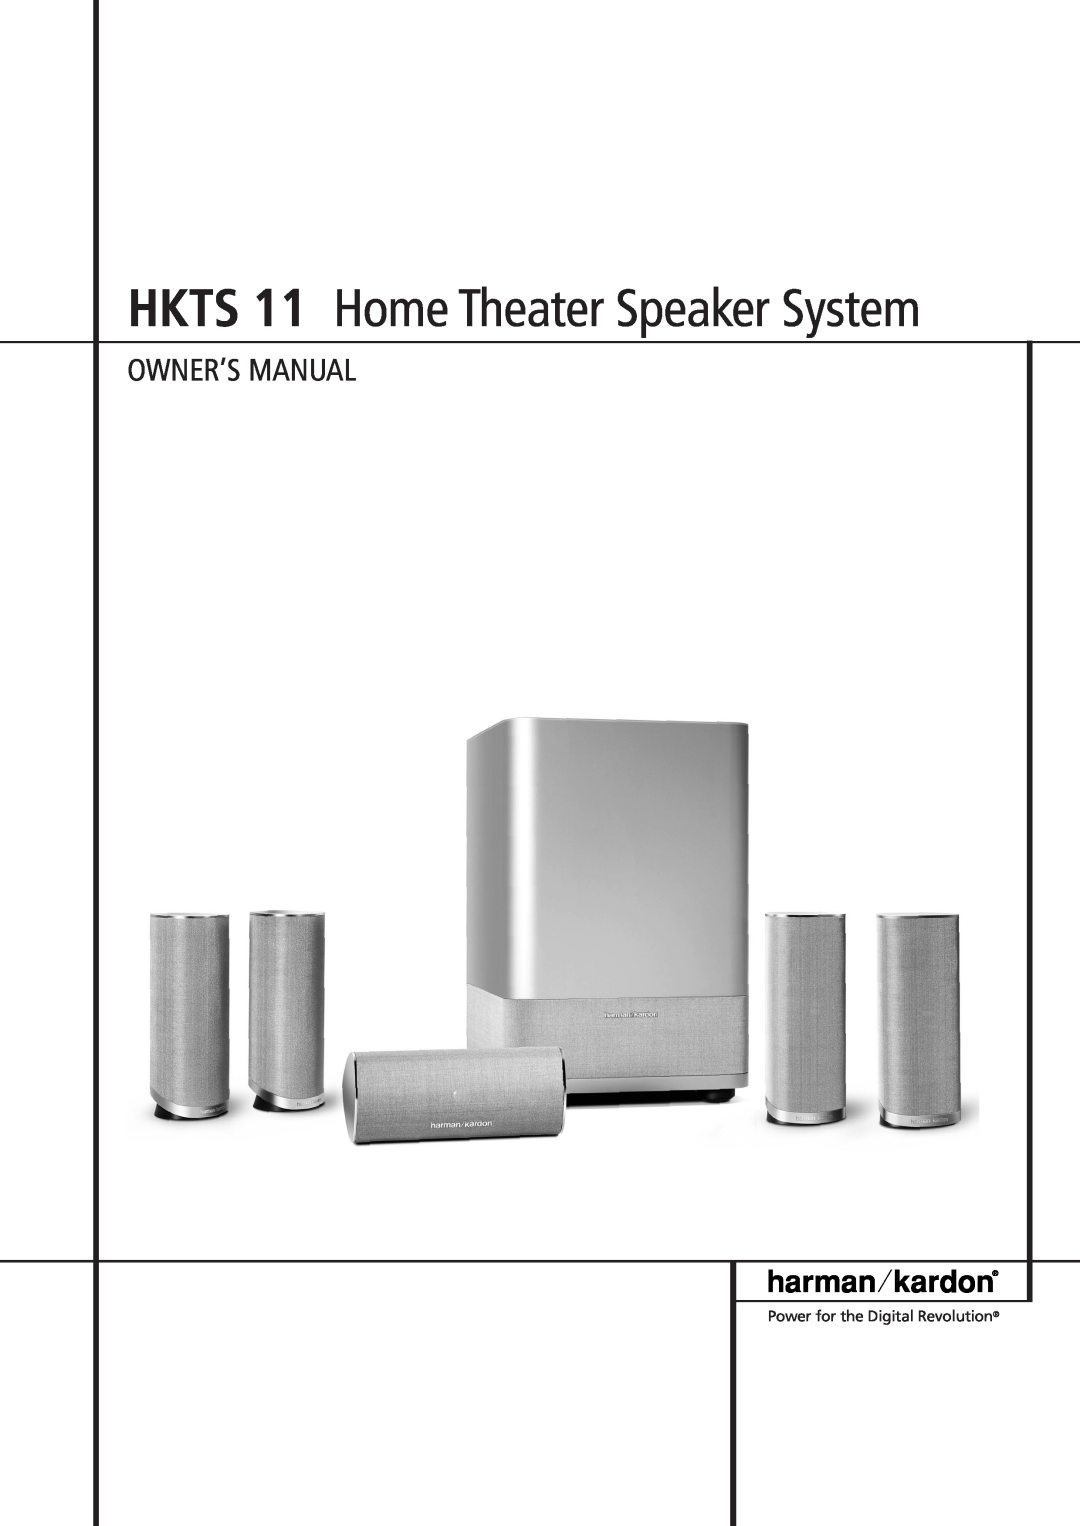 Harman-Kardon owner manual HKTS 11 Home Theater Speaker System, Power for the Digital Revolution 